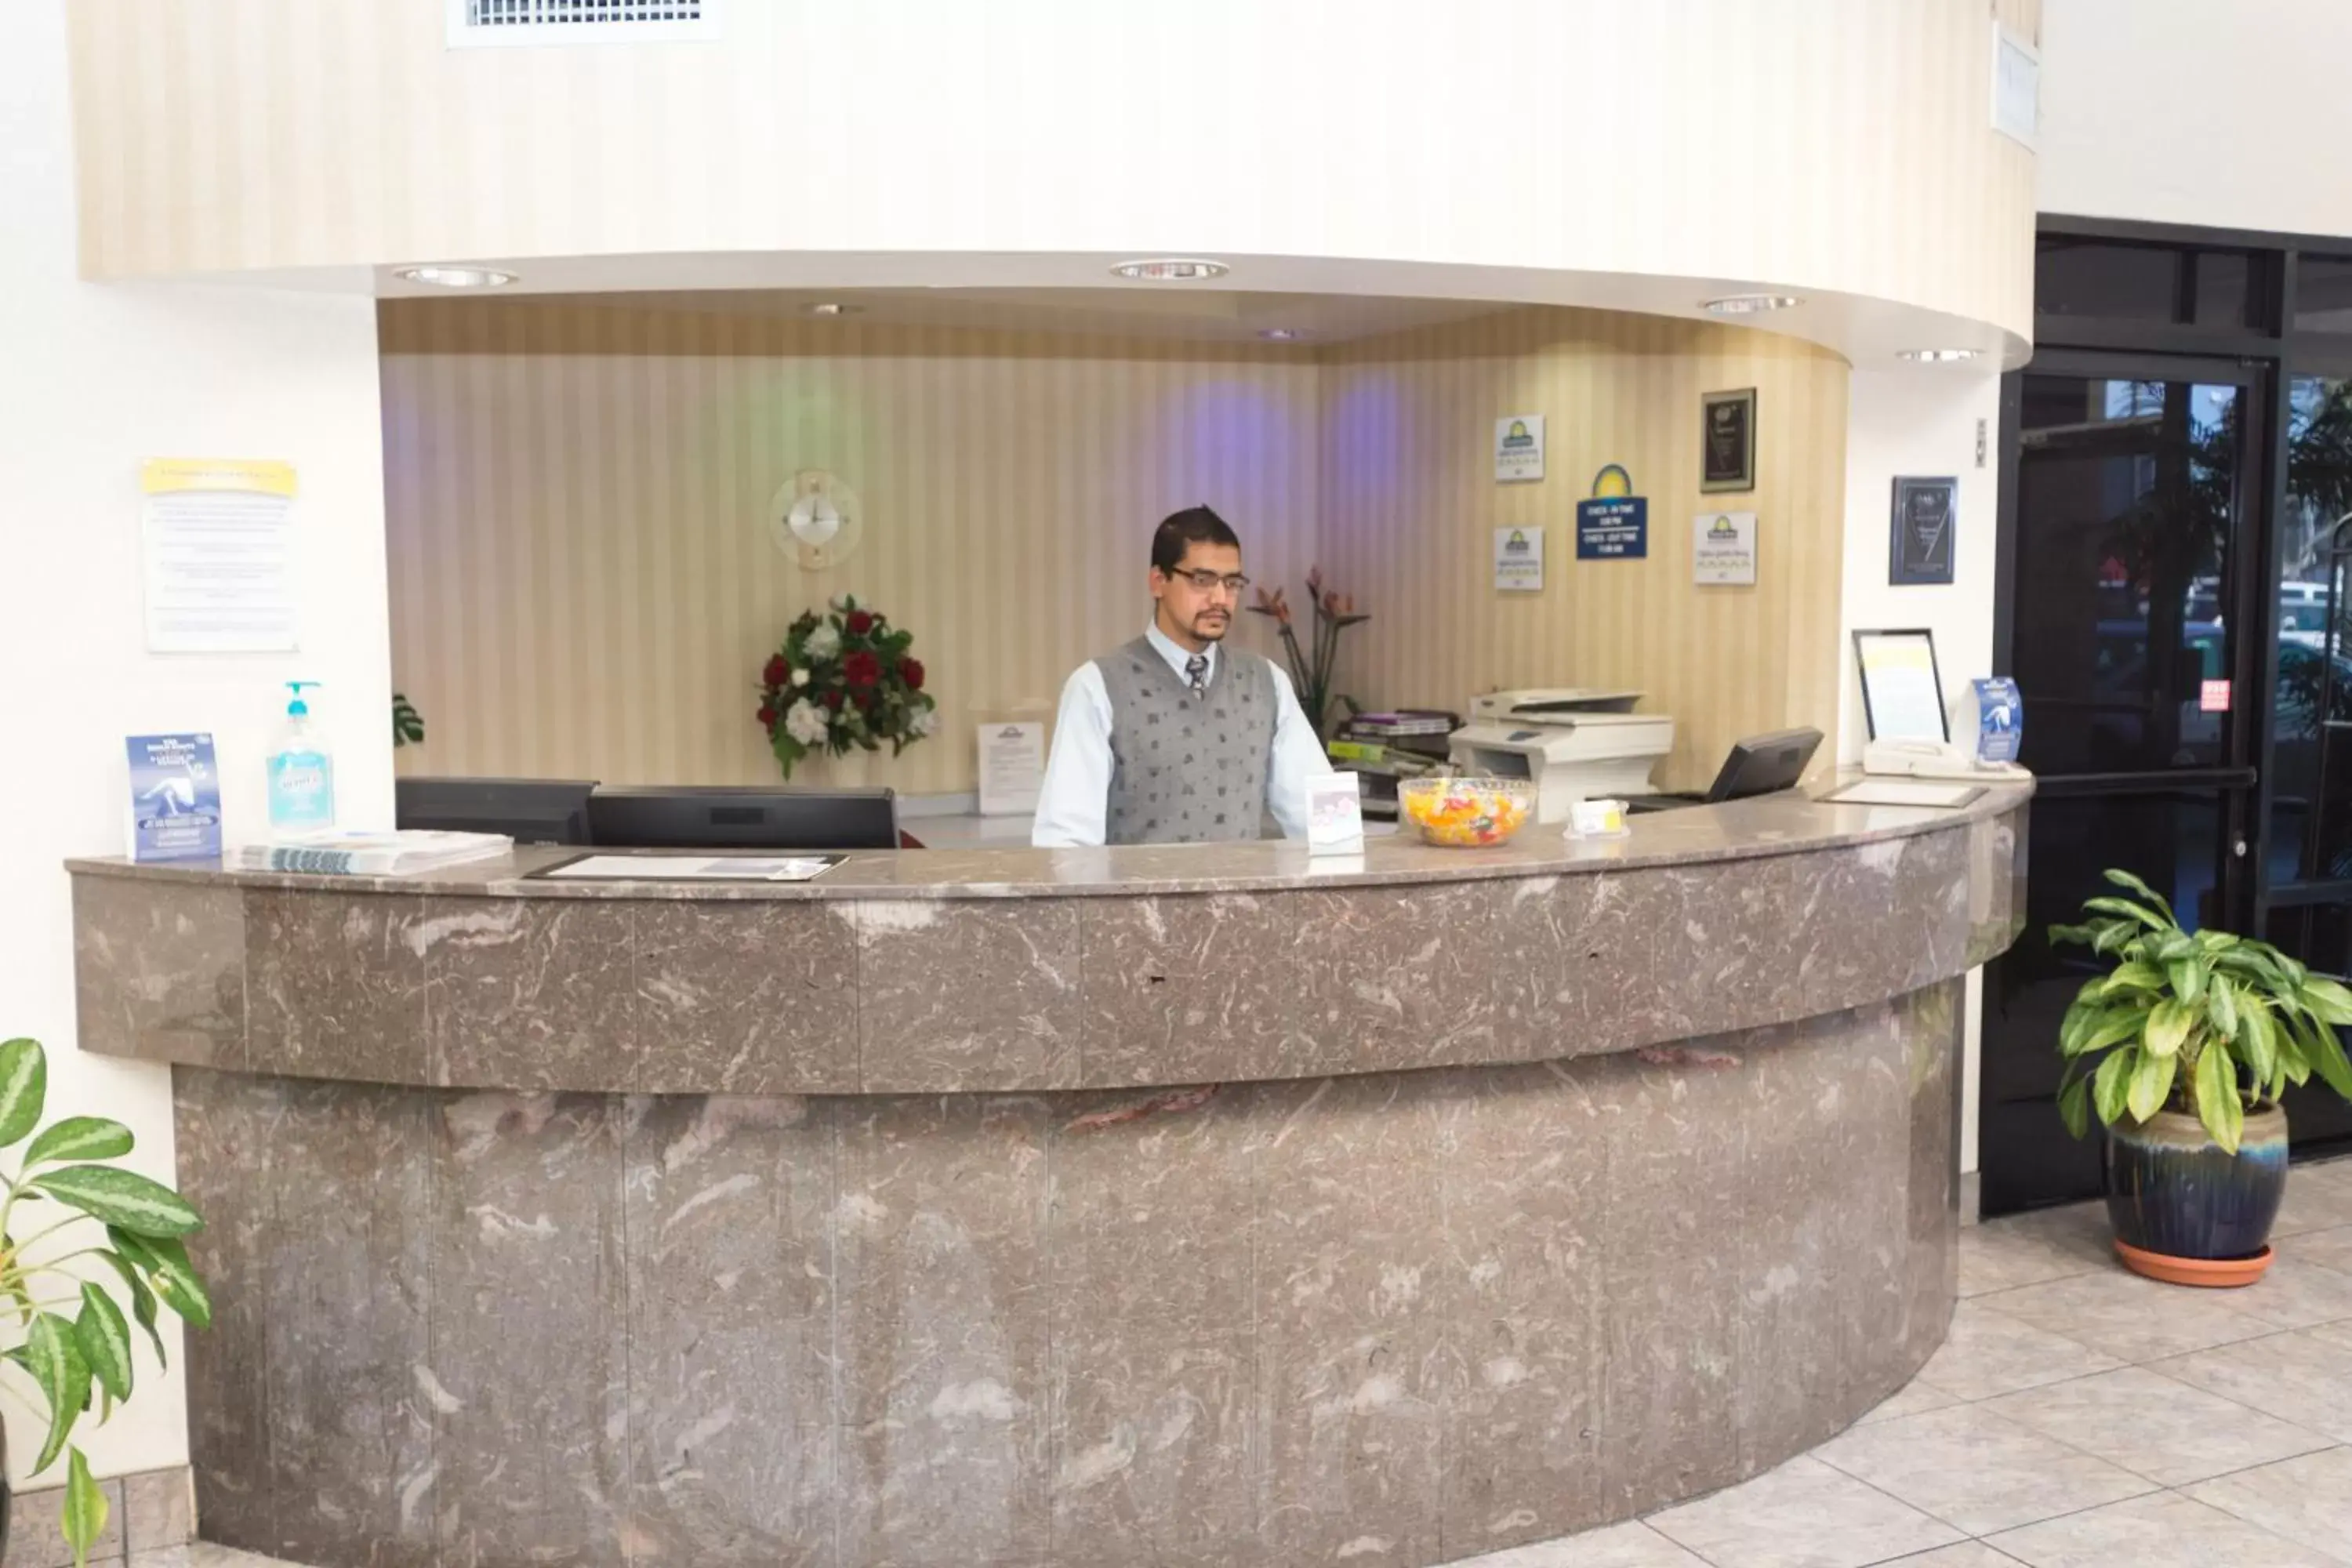 Lobby or reception, Lobby/Reception in Days Inn & Suites by Wyndham Artesia